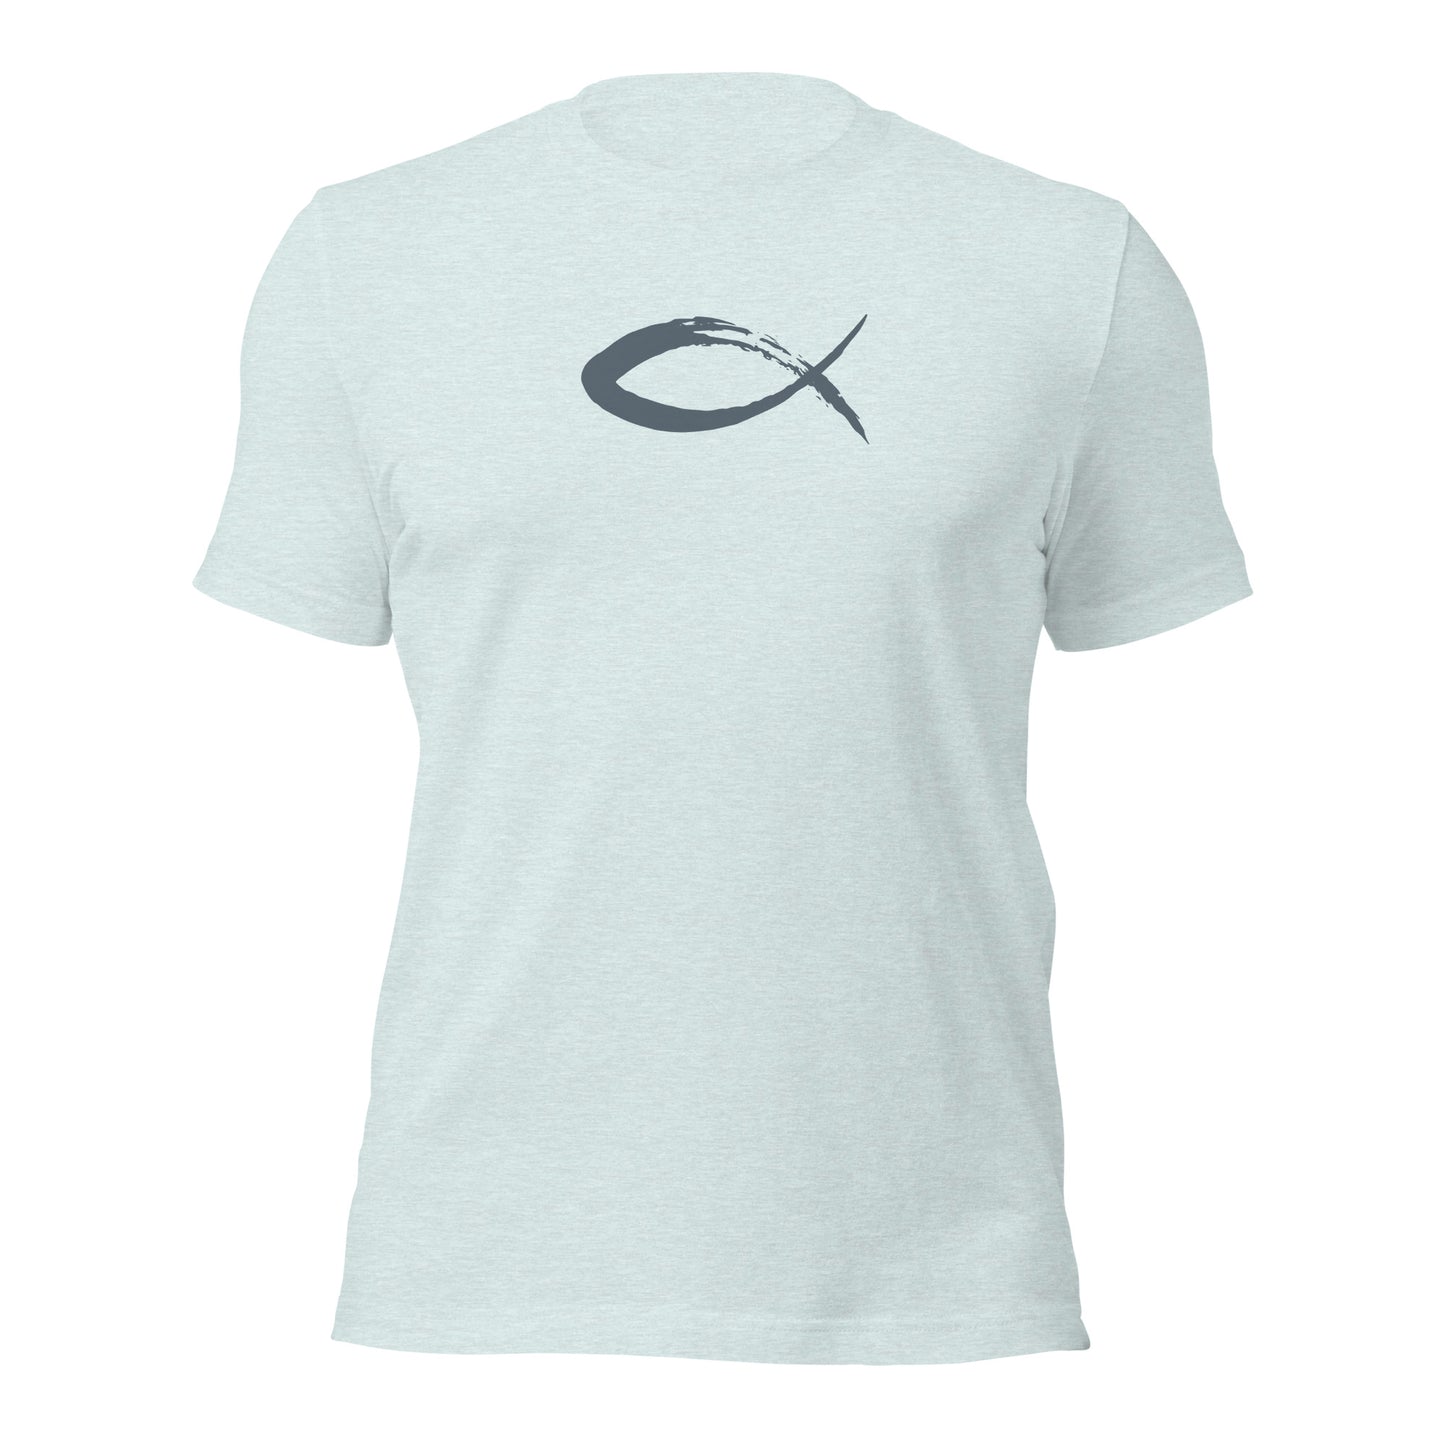 Fisher of Men Unisex t-shirt